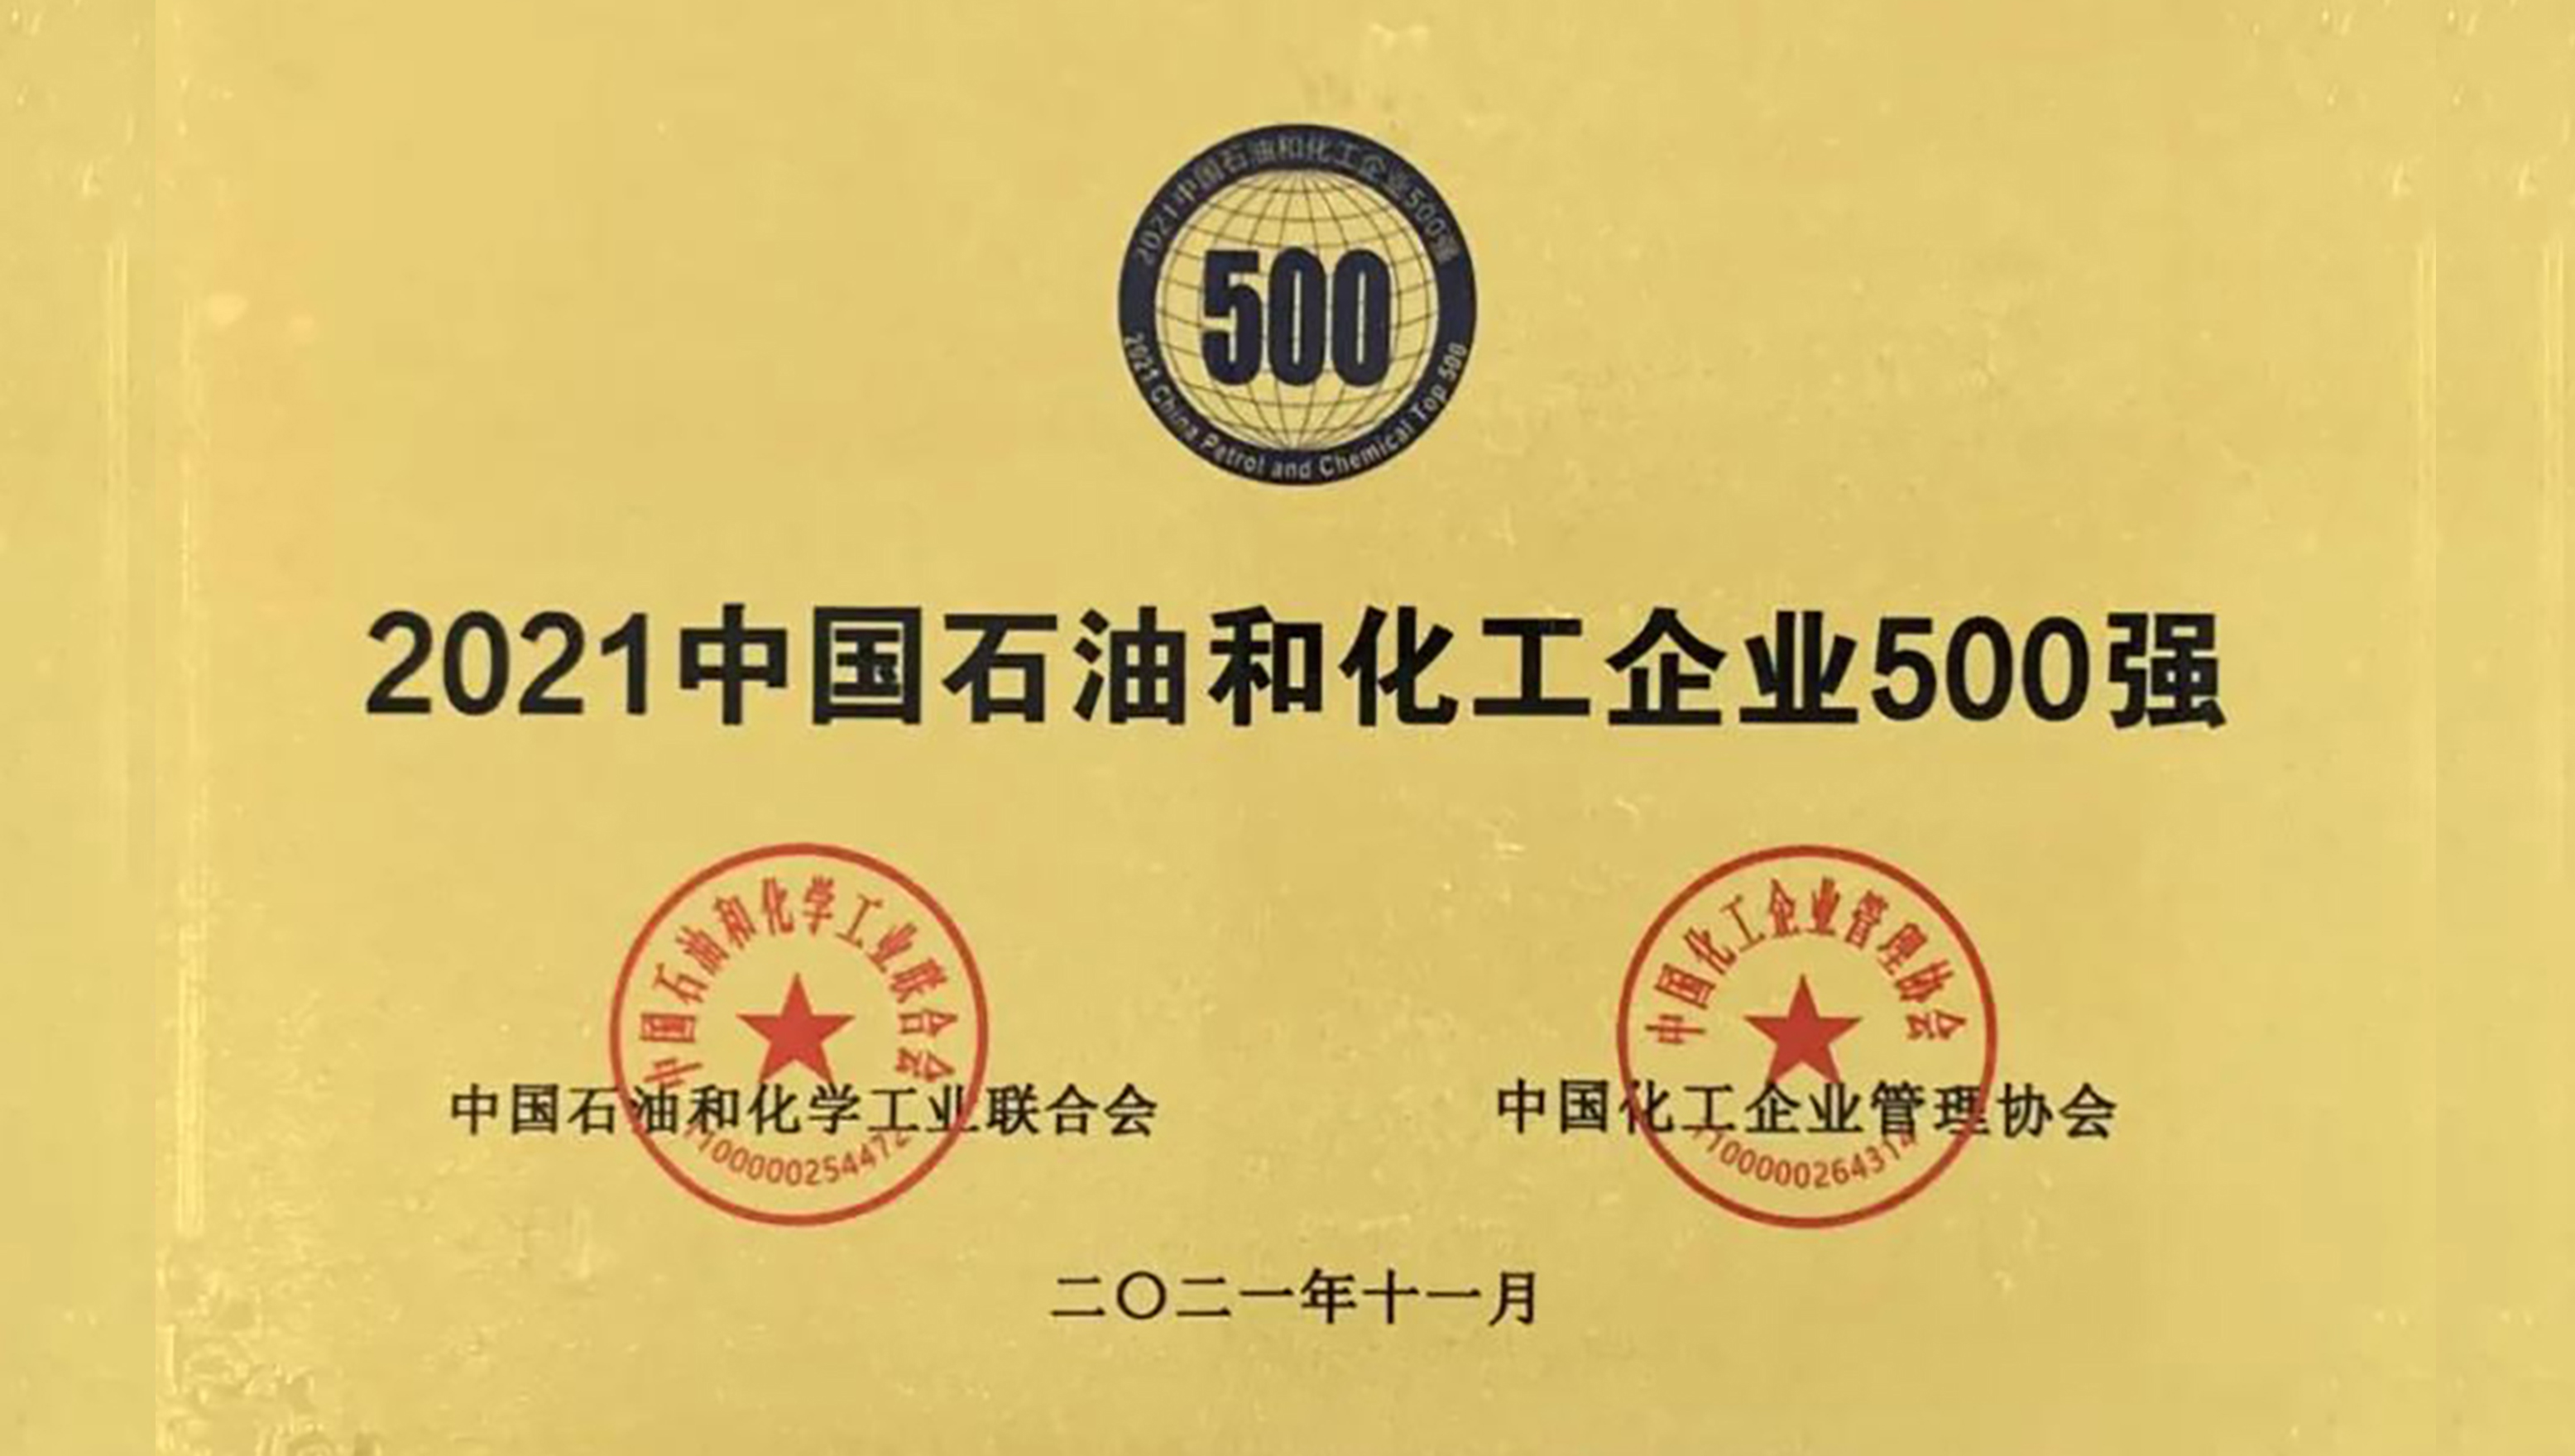 西洋实业荣获“中国石油化工企业500强”